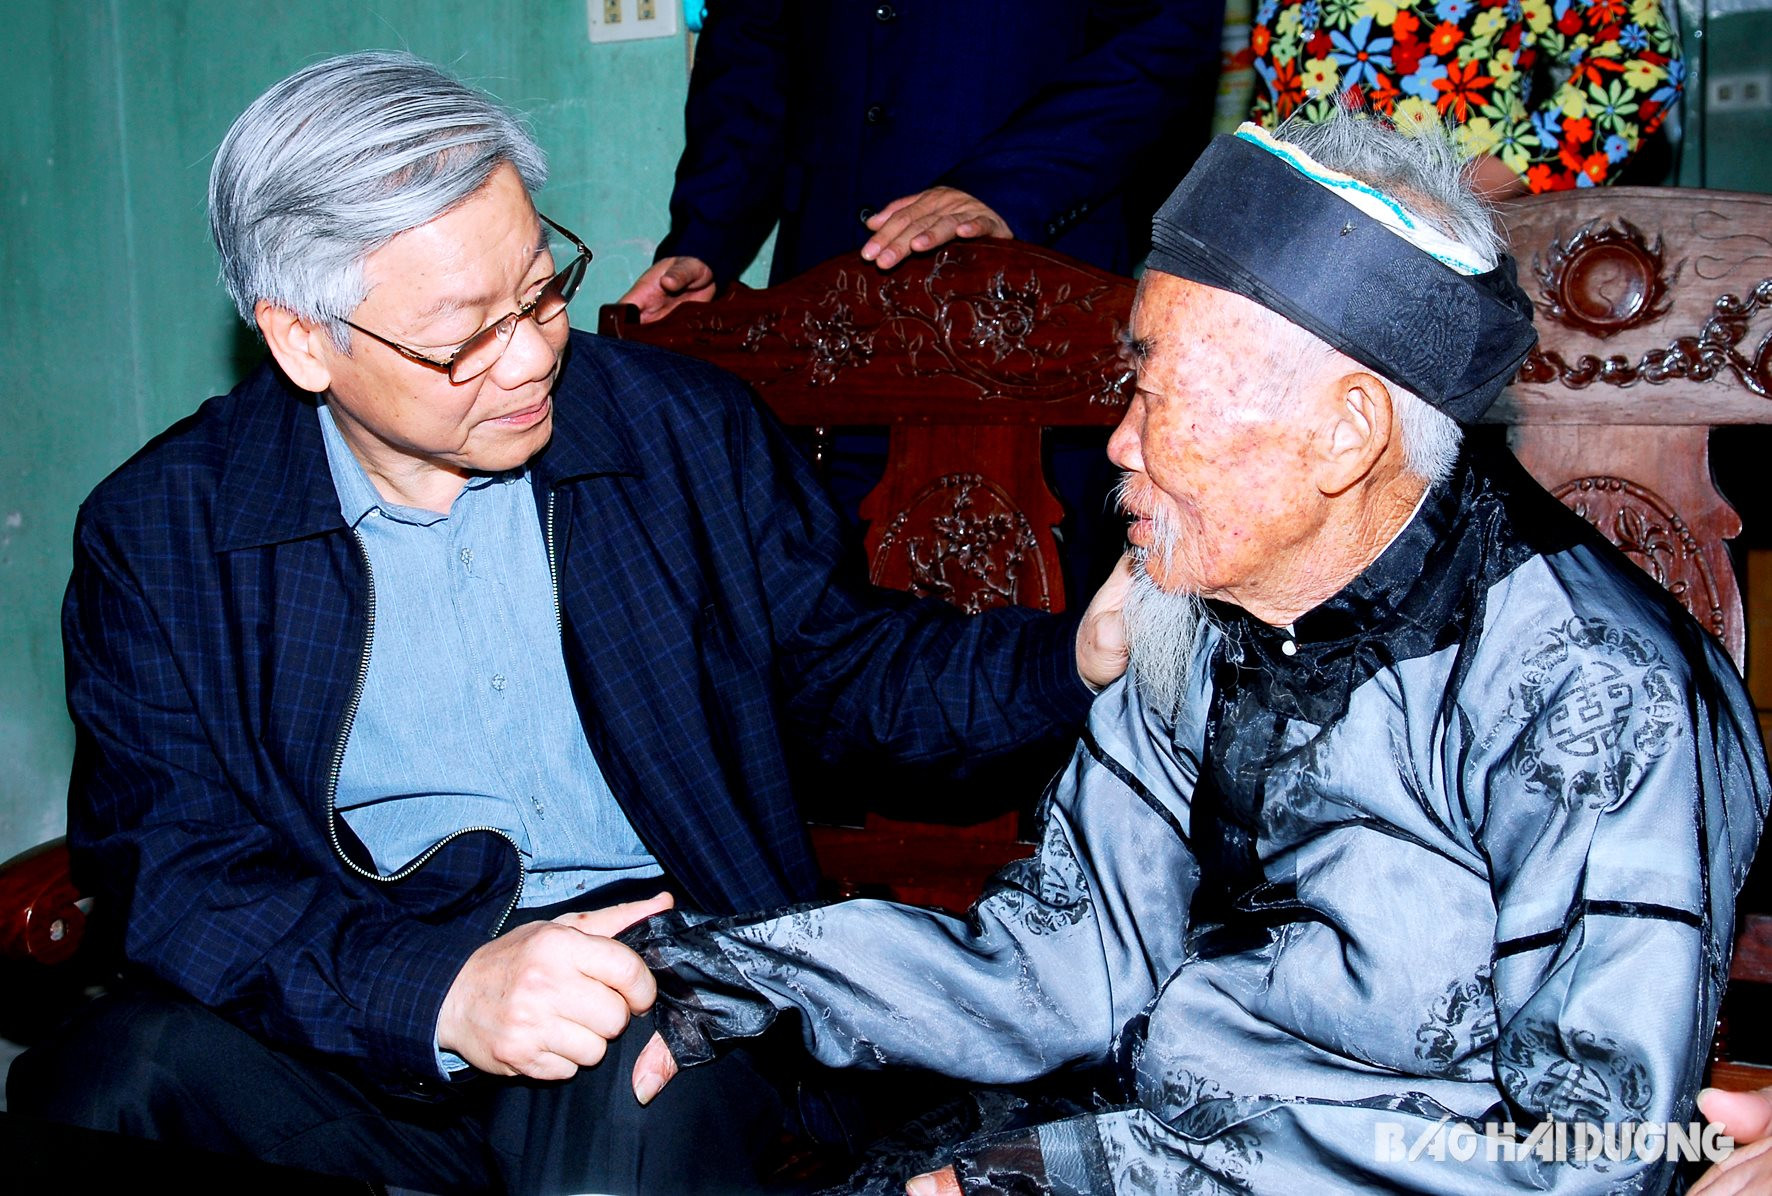 Đồng chí Nguyễn Phú Trọng thăm hỏi, tặng quà cụ Đặng Văn Chiên, 89 tuổi, là bố liệt sĩ, thuộc gia đình chính sách tiêu biểu ở thôn Bồ Dương